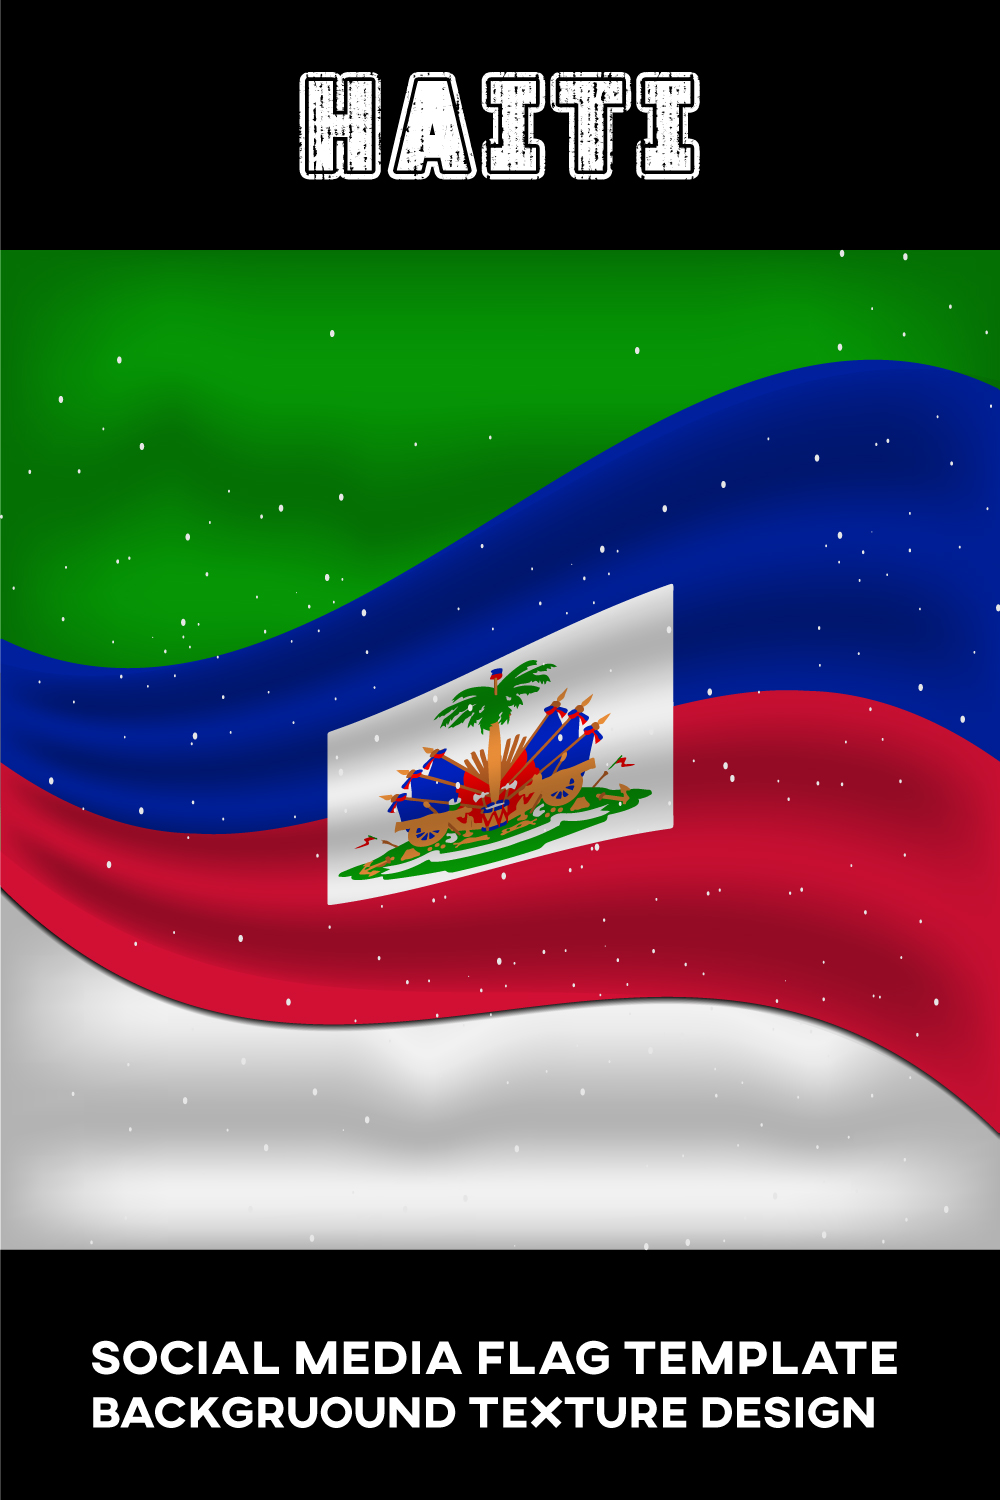 Enchanting image of the flag of Haiti.